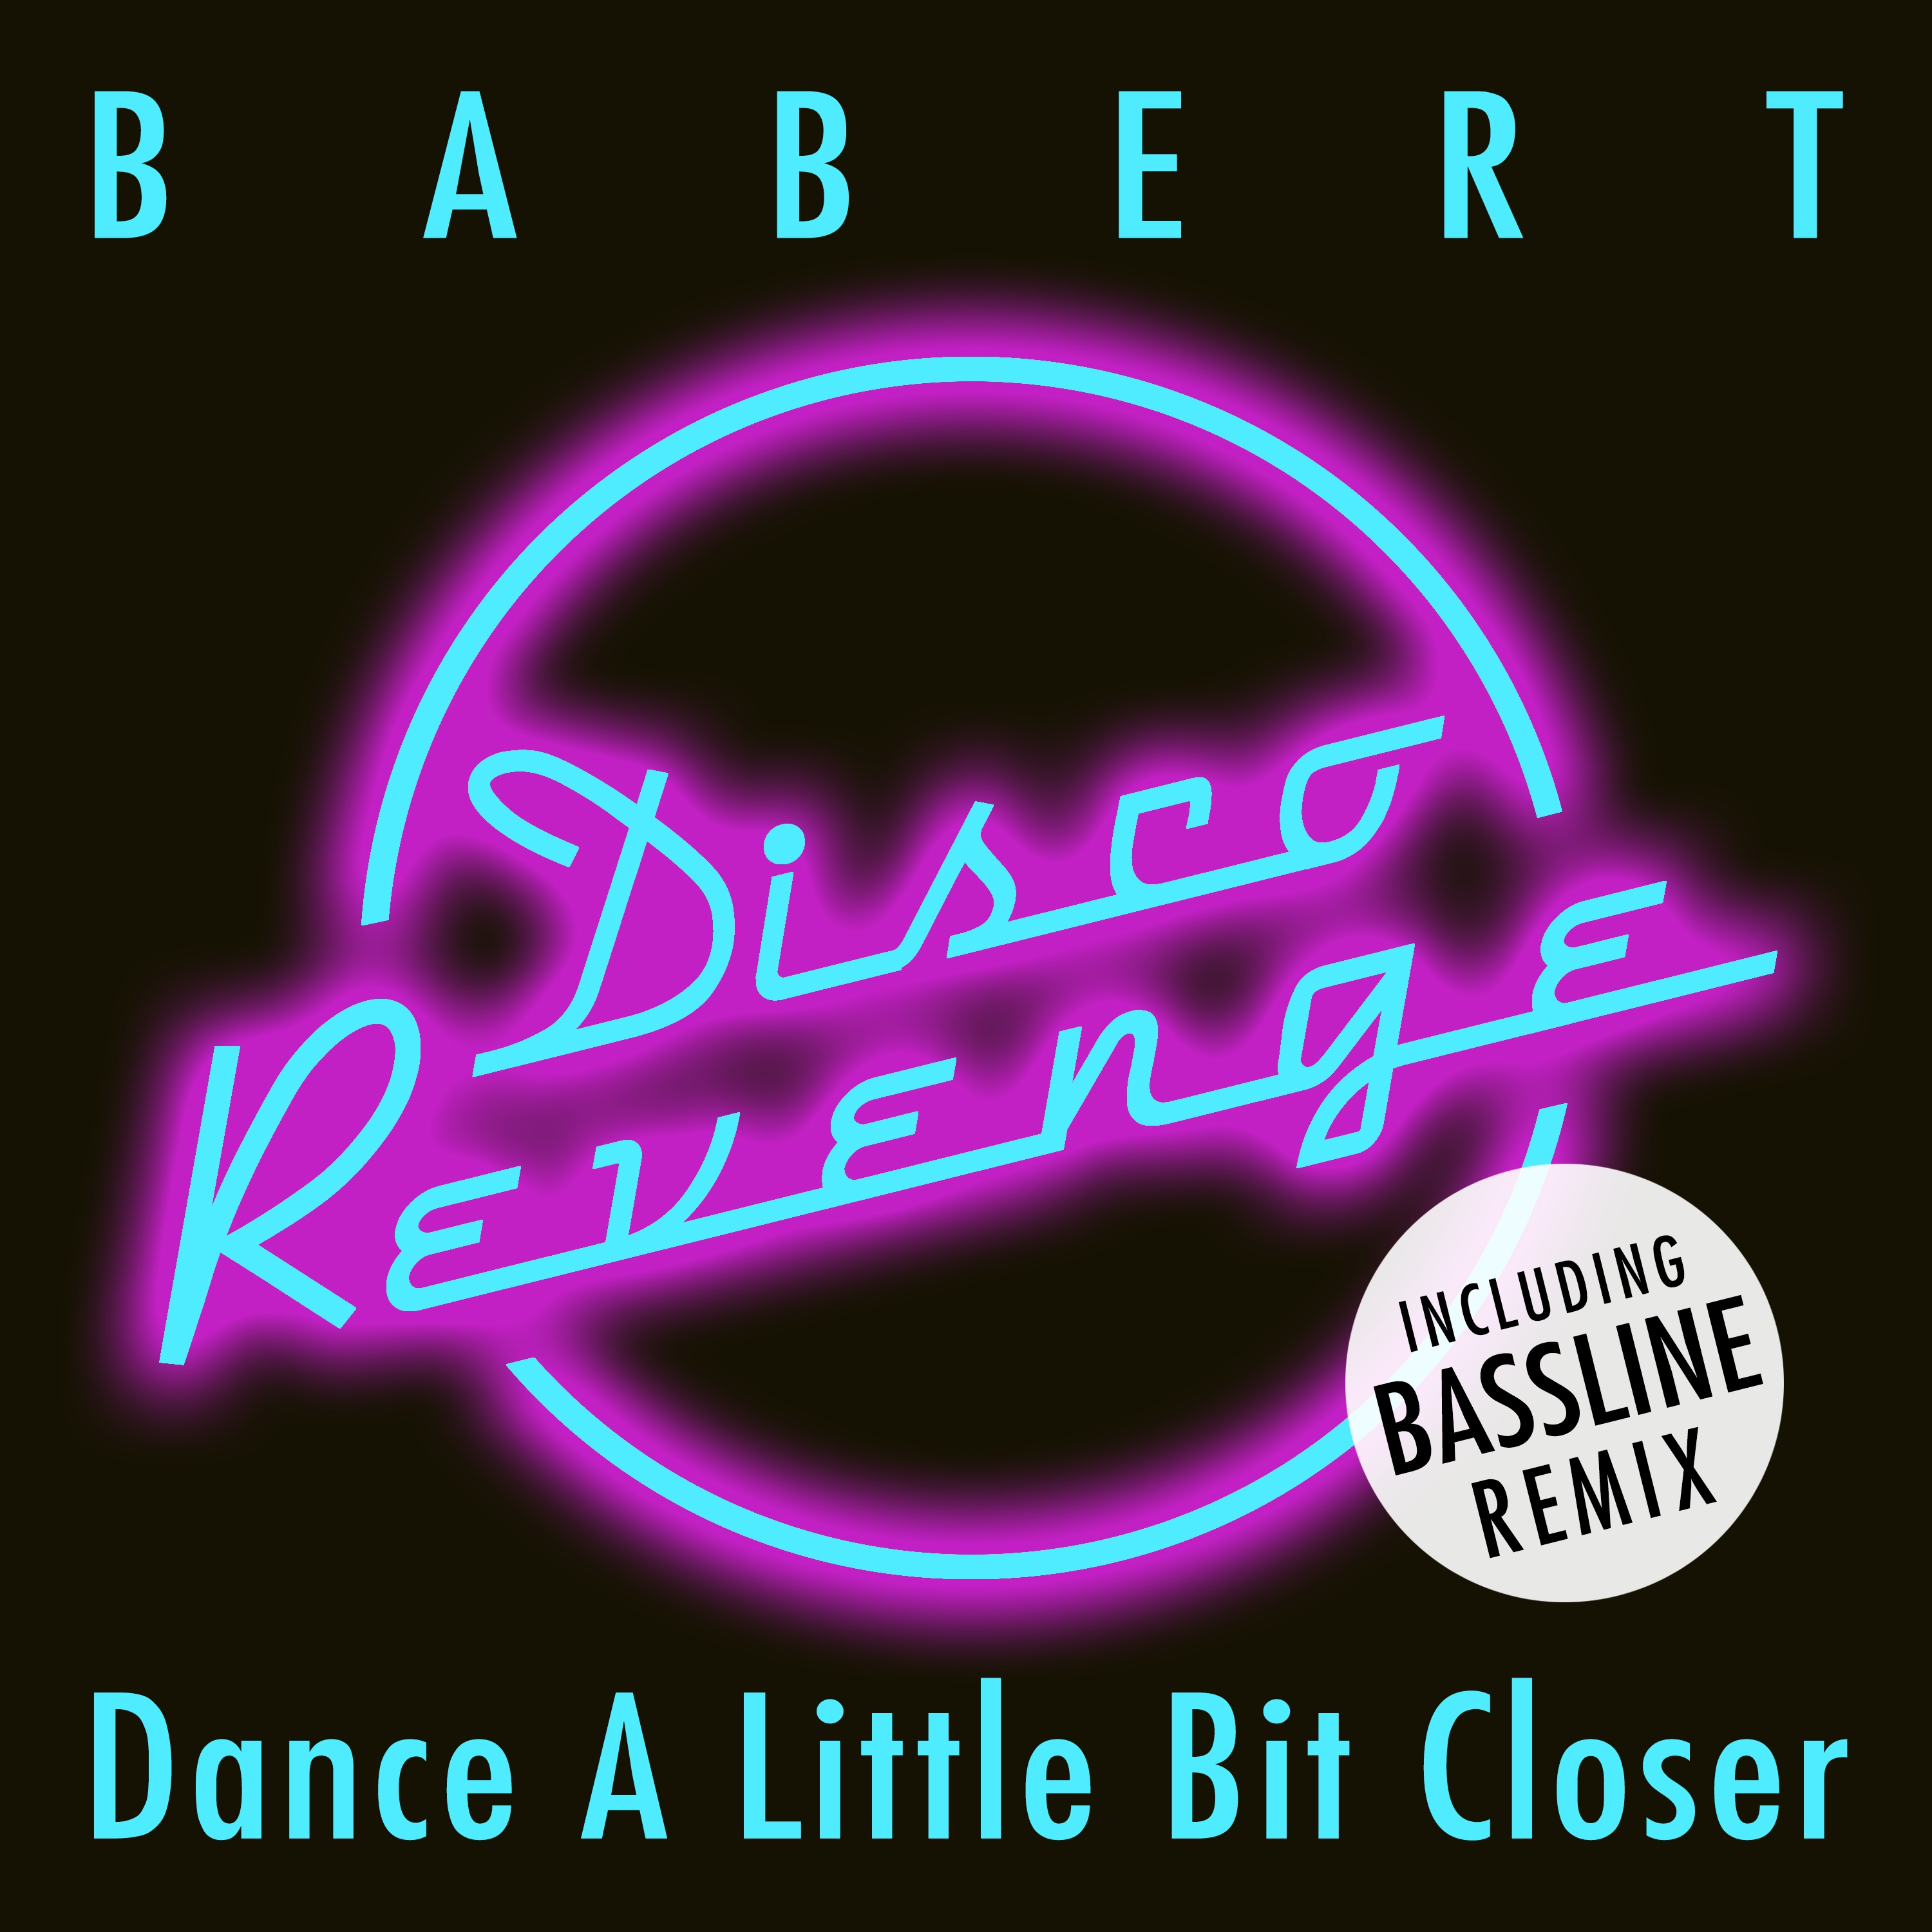 Dance a Little Bit Closer (Bass Line Remix)